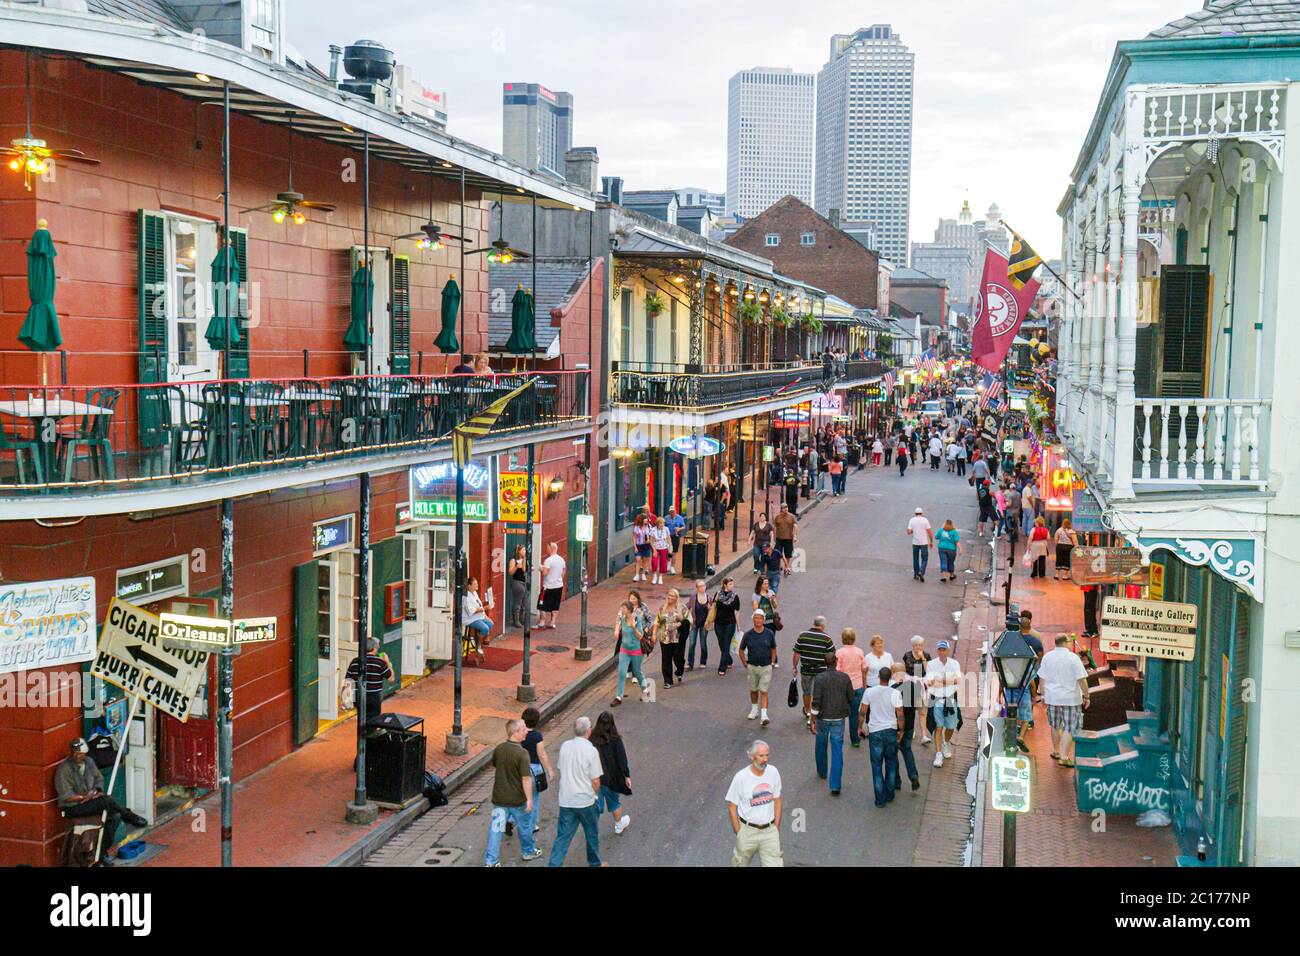 New Orleans Louisiana, French Quarter, Bourbon Street, Skyline der Stadt Eisengeländer, Balkone Neonschilder Bars Männer Frauen Paare Nachtleben Stockfoto